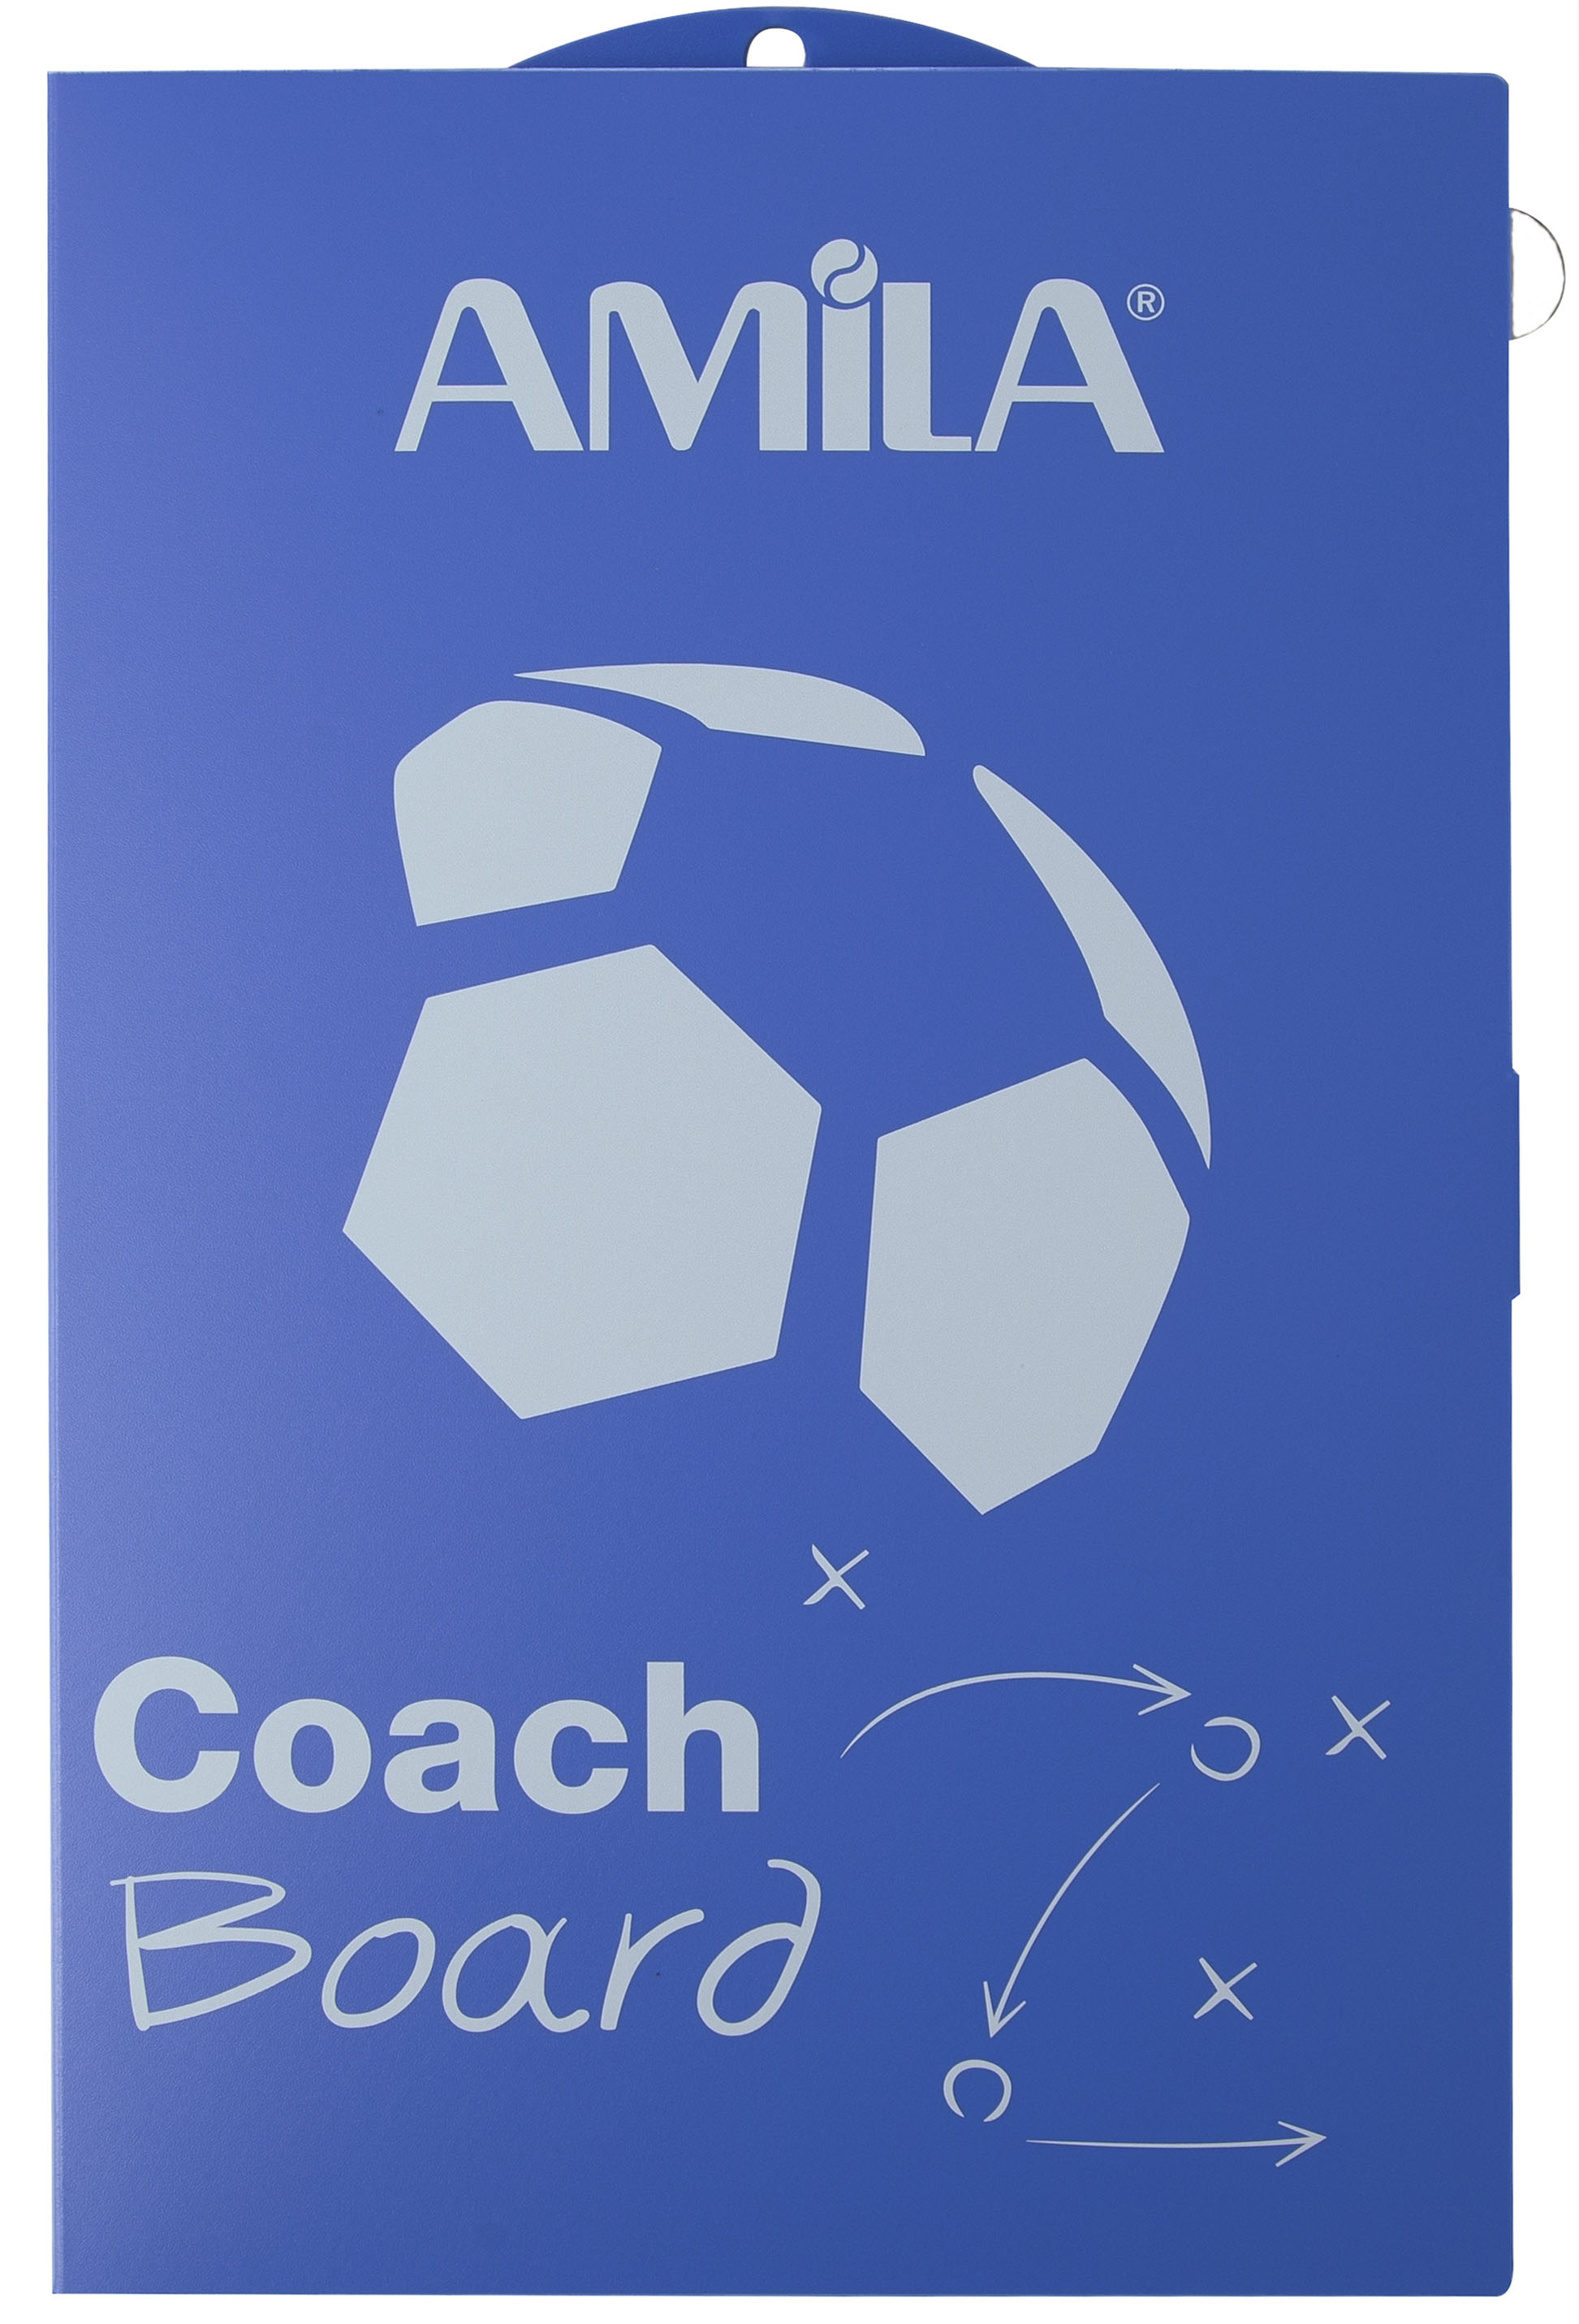 Amila Πινακας - Ταμπλο Προπονητη Ποδοσφαιρου (41968)